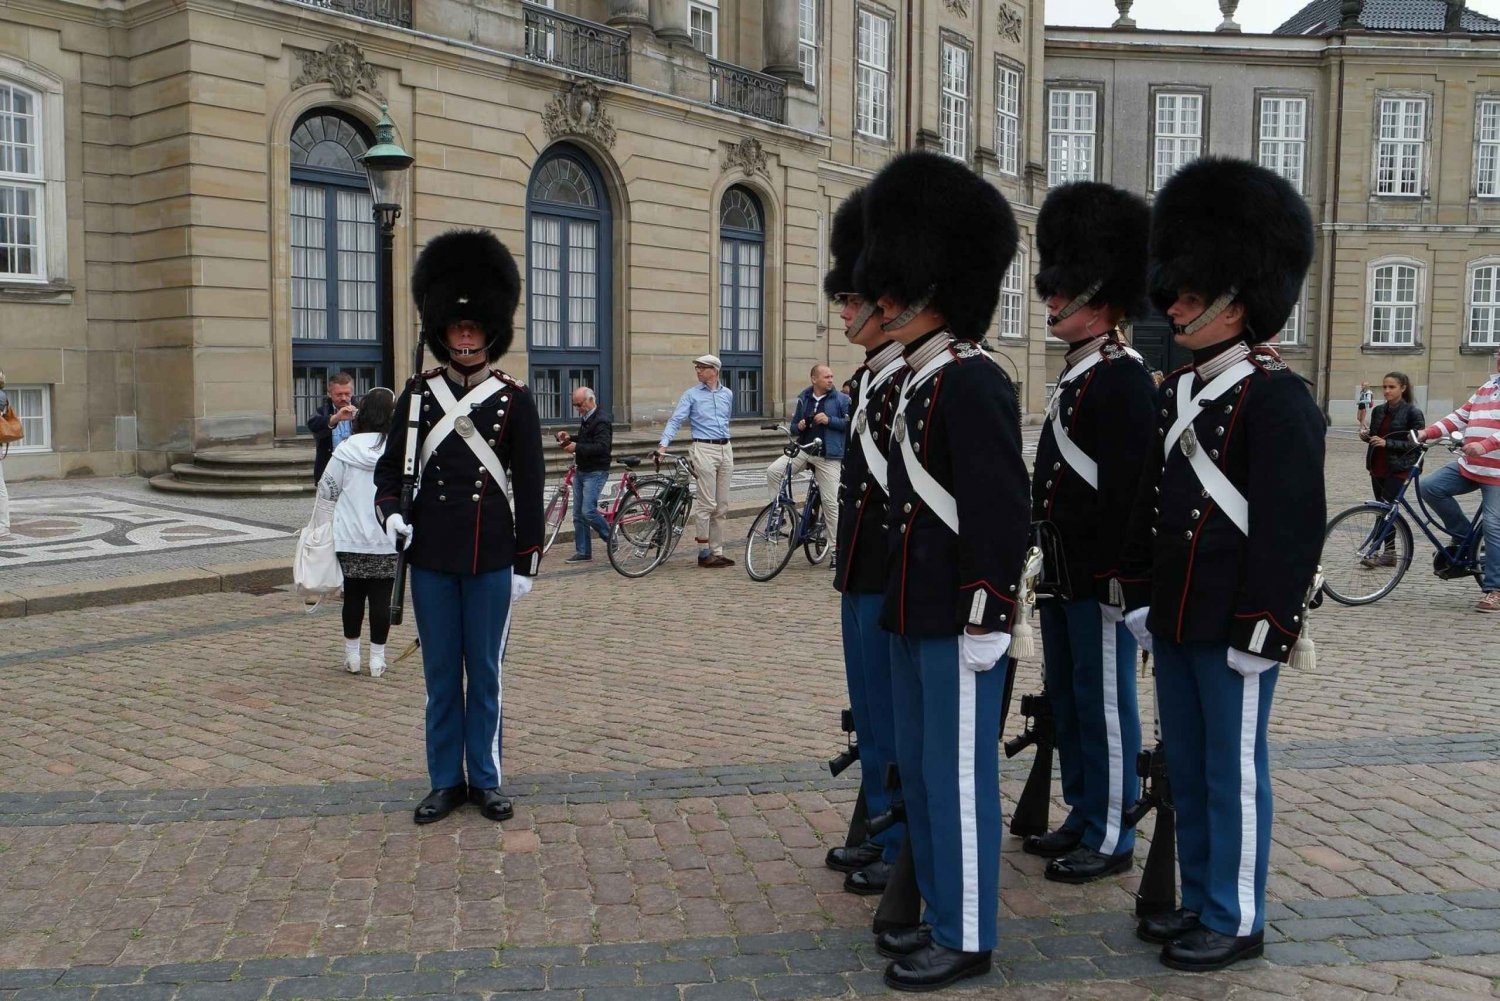 Kopenhagen: Wachablösung mit einer ehemaligen königlichen Garde